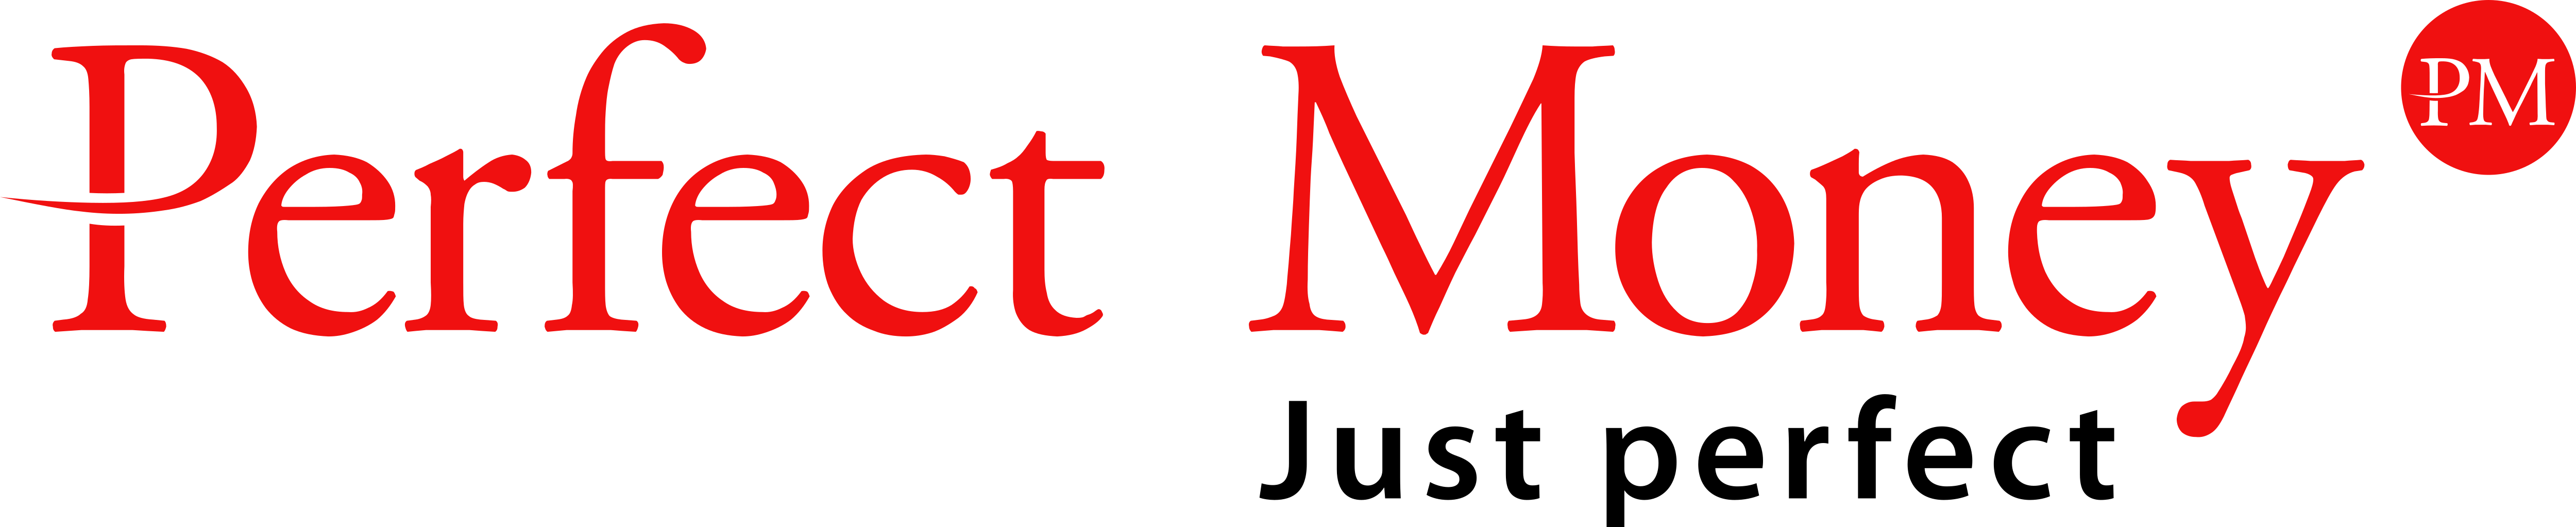 perfectMoney-logo